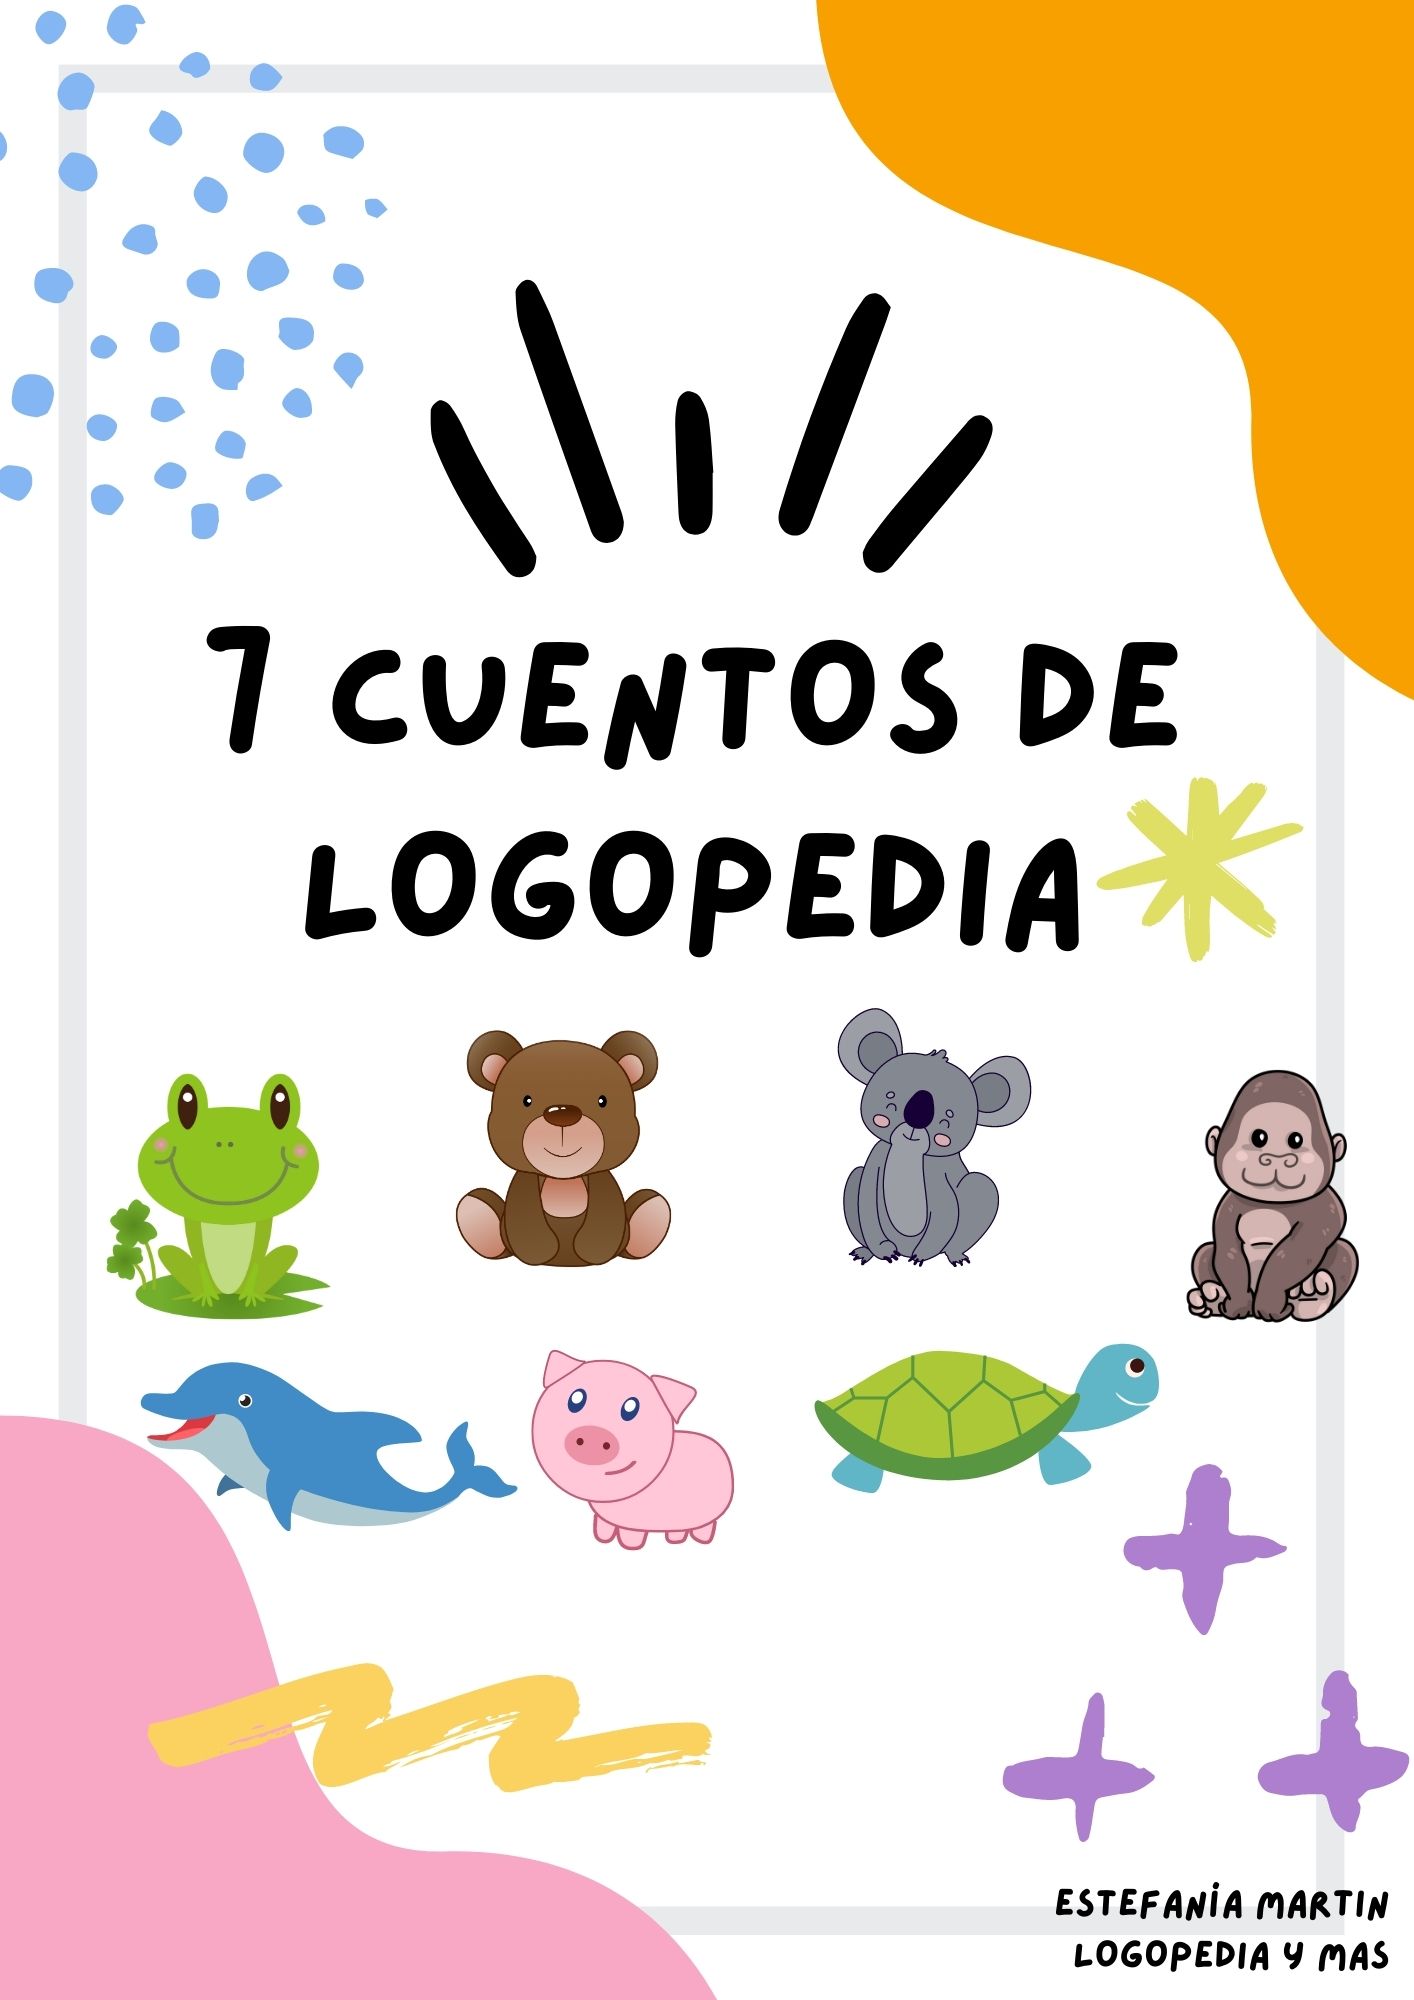 Logopedia en especial: Cuenta cuentos infantiles  Feliz dia del libro,  Cuento infantiles, Cuentos